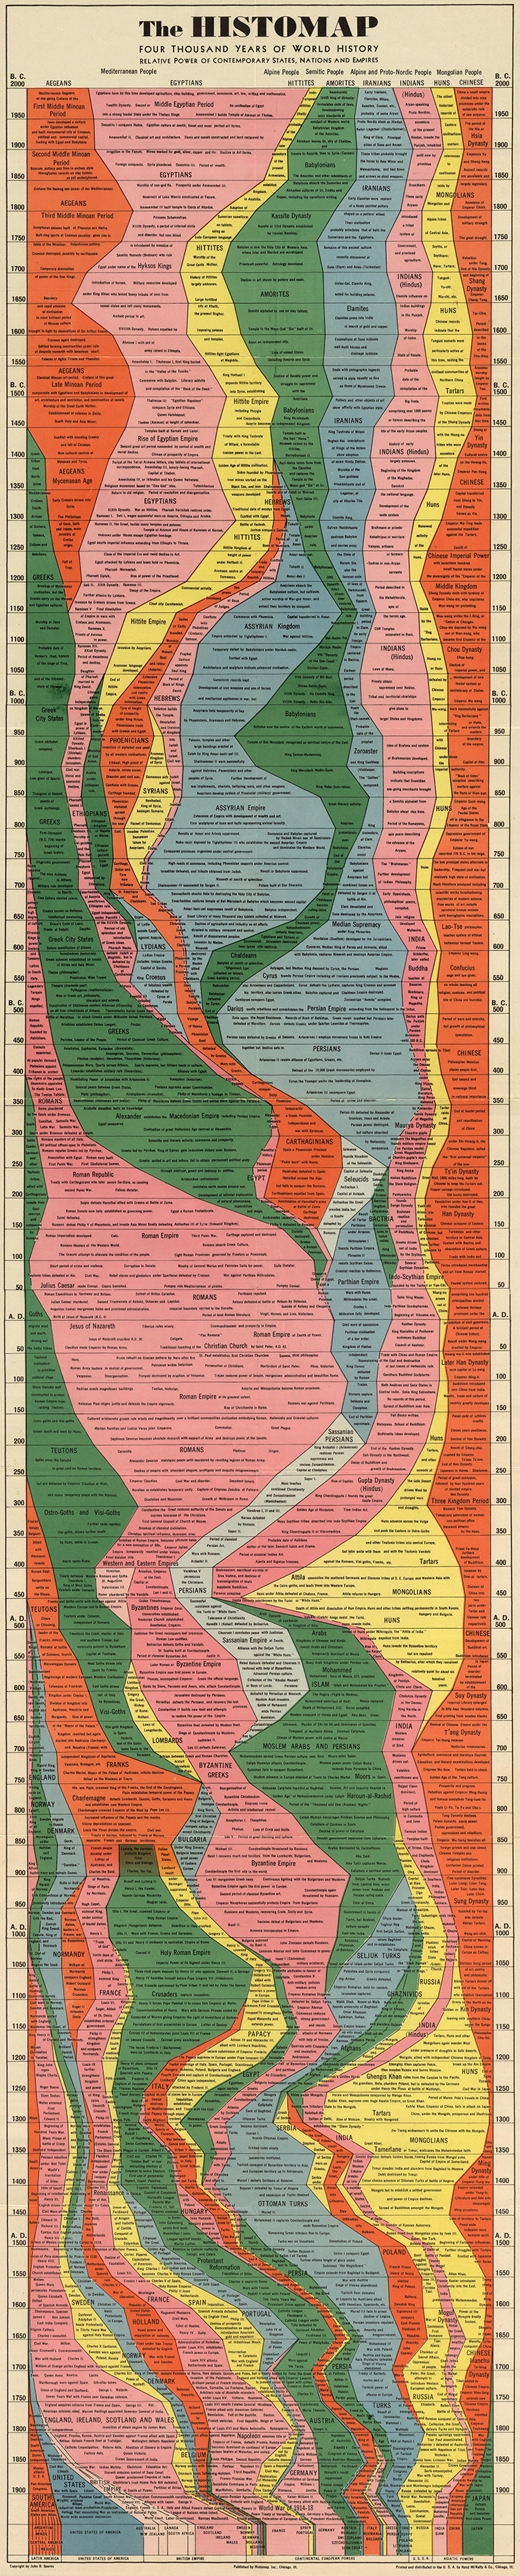 World History Chart